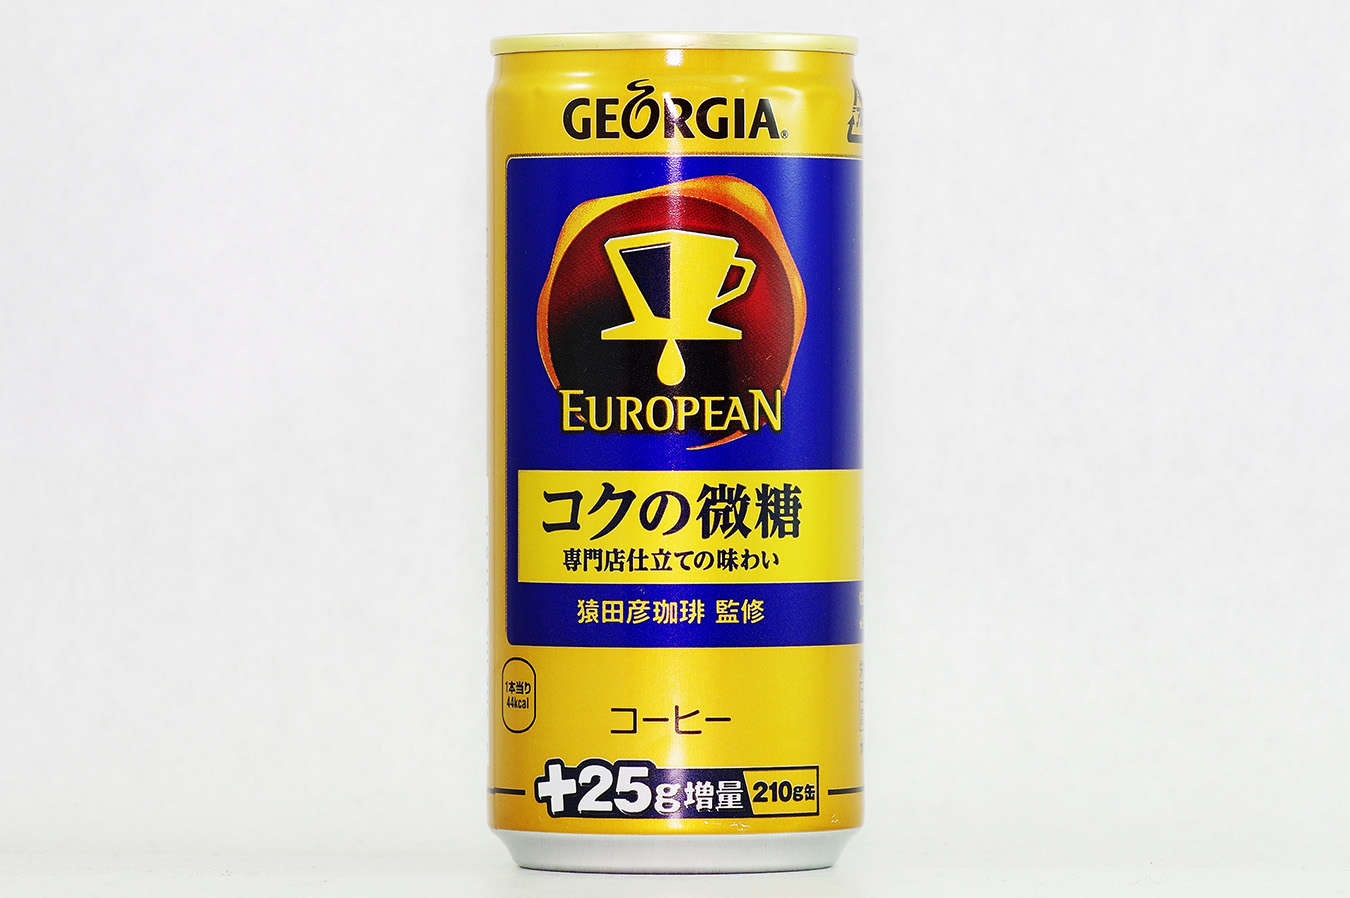 GEORGIA ヨーロピアン コクの微糖 +25g増量210g缶 2016年5月